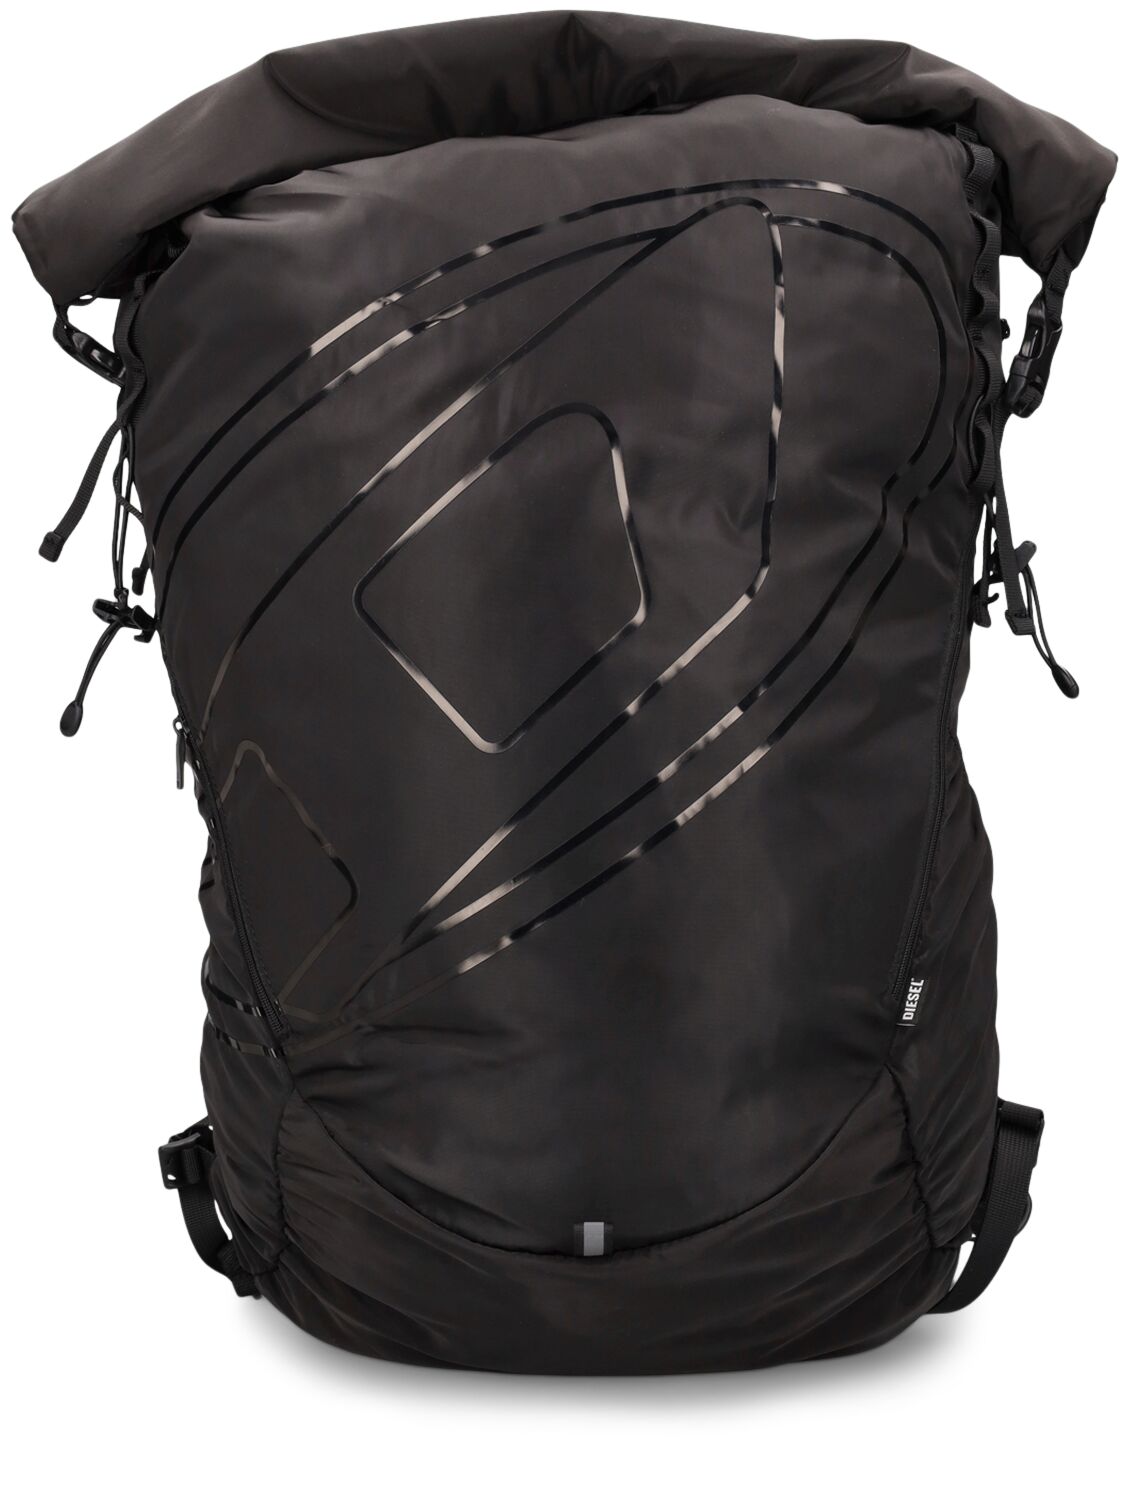 Oval-d Light Nylon Backpack